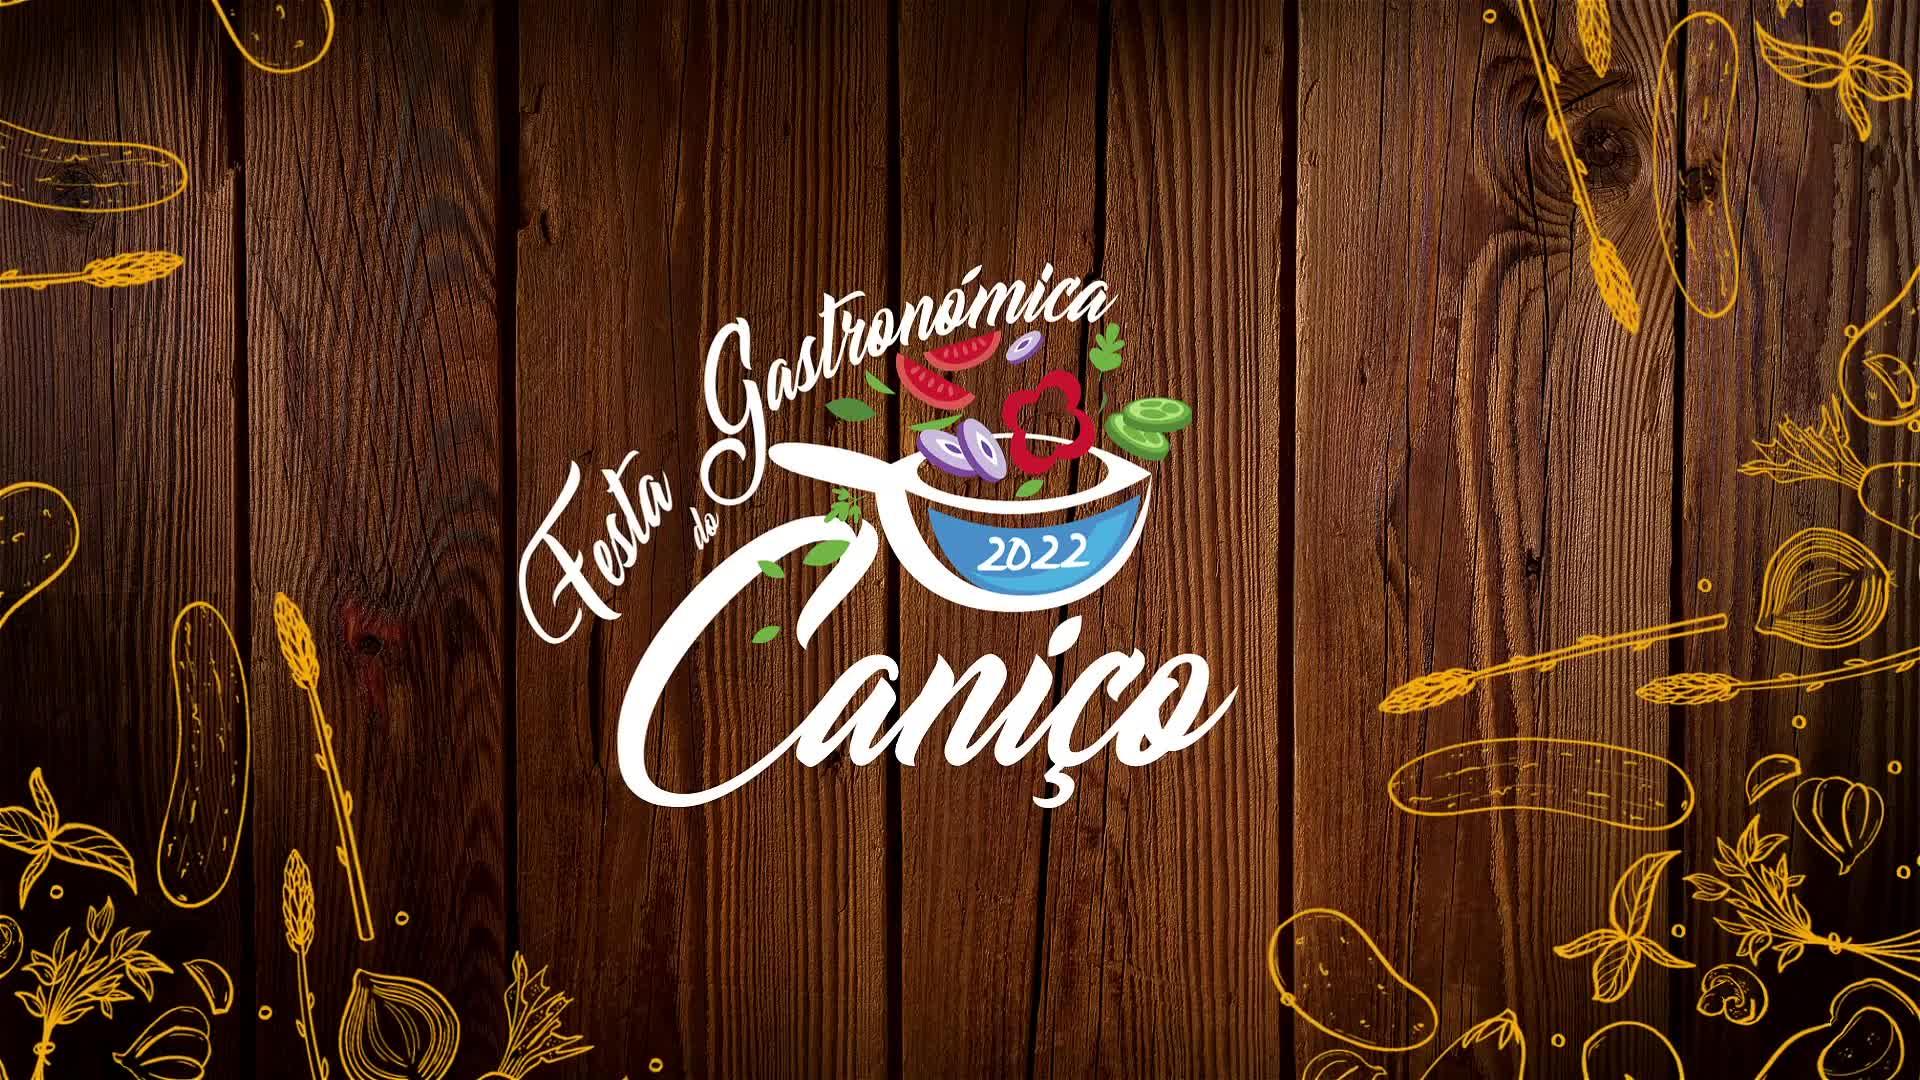 PROMO - Festa Gastronómica do Caniço 2022